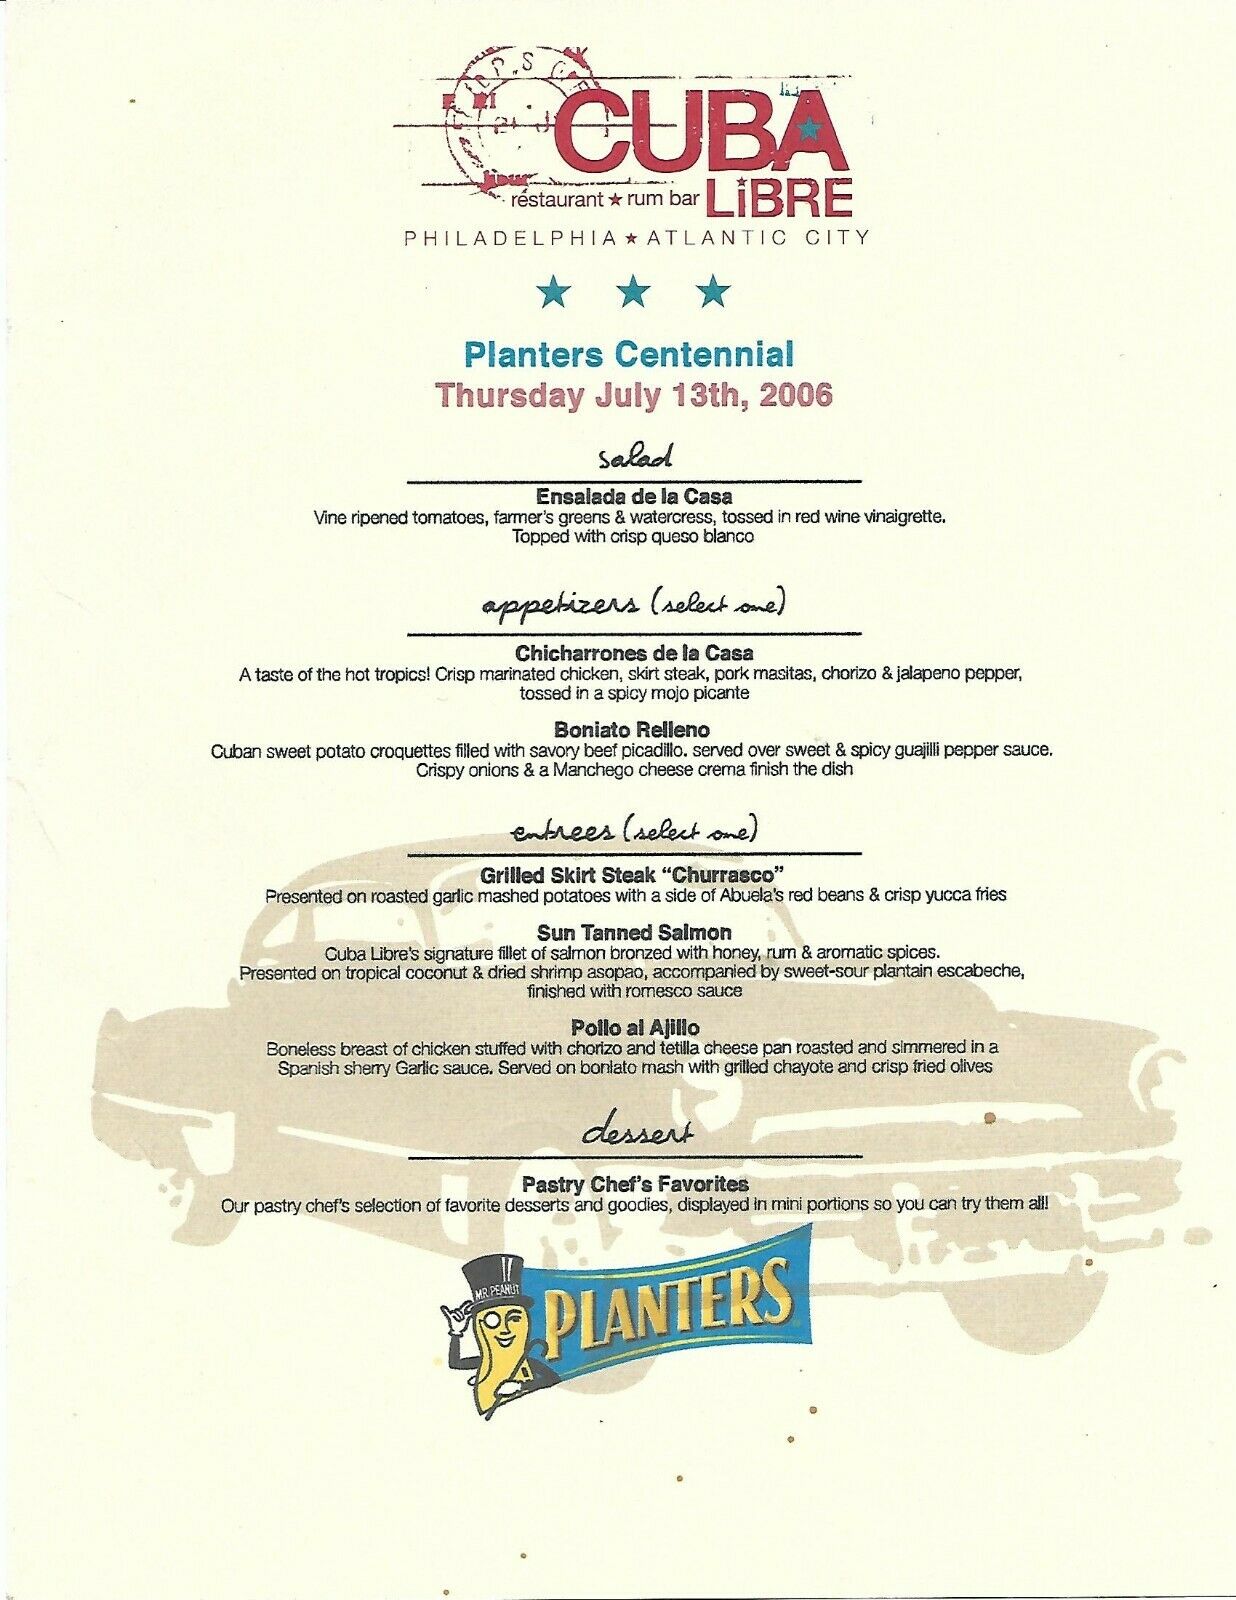 Planters Peanut Mr Peanut Cuba Libre Restaurant Menu July 13, 2006 Lot#70